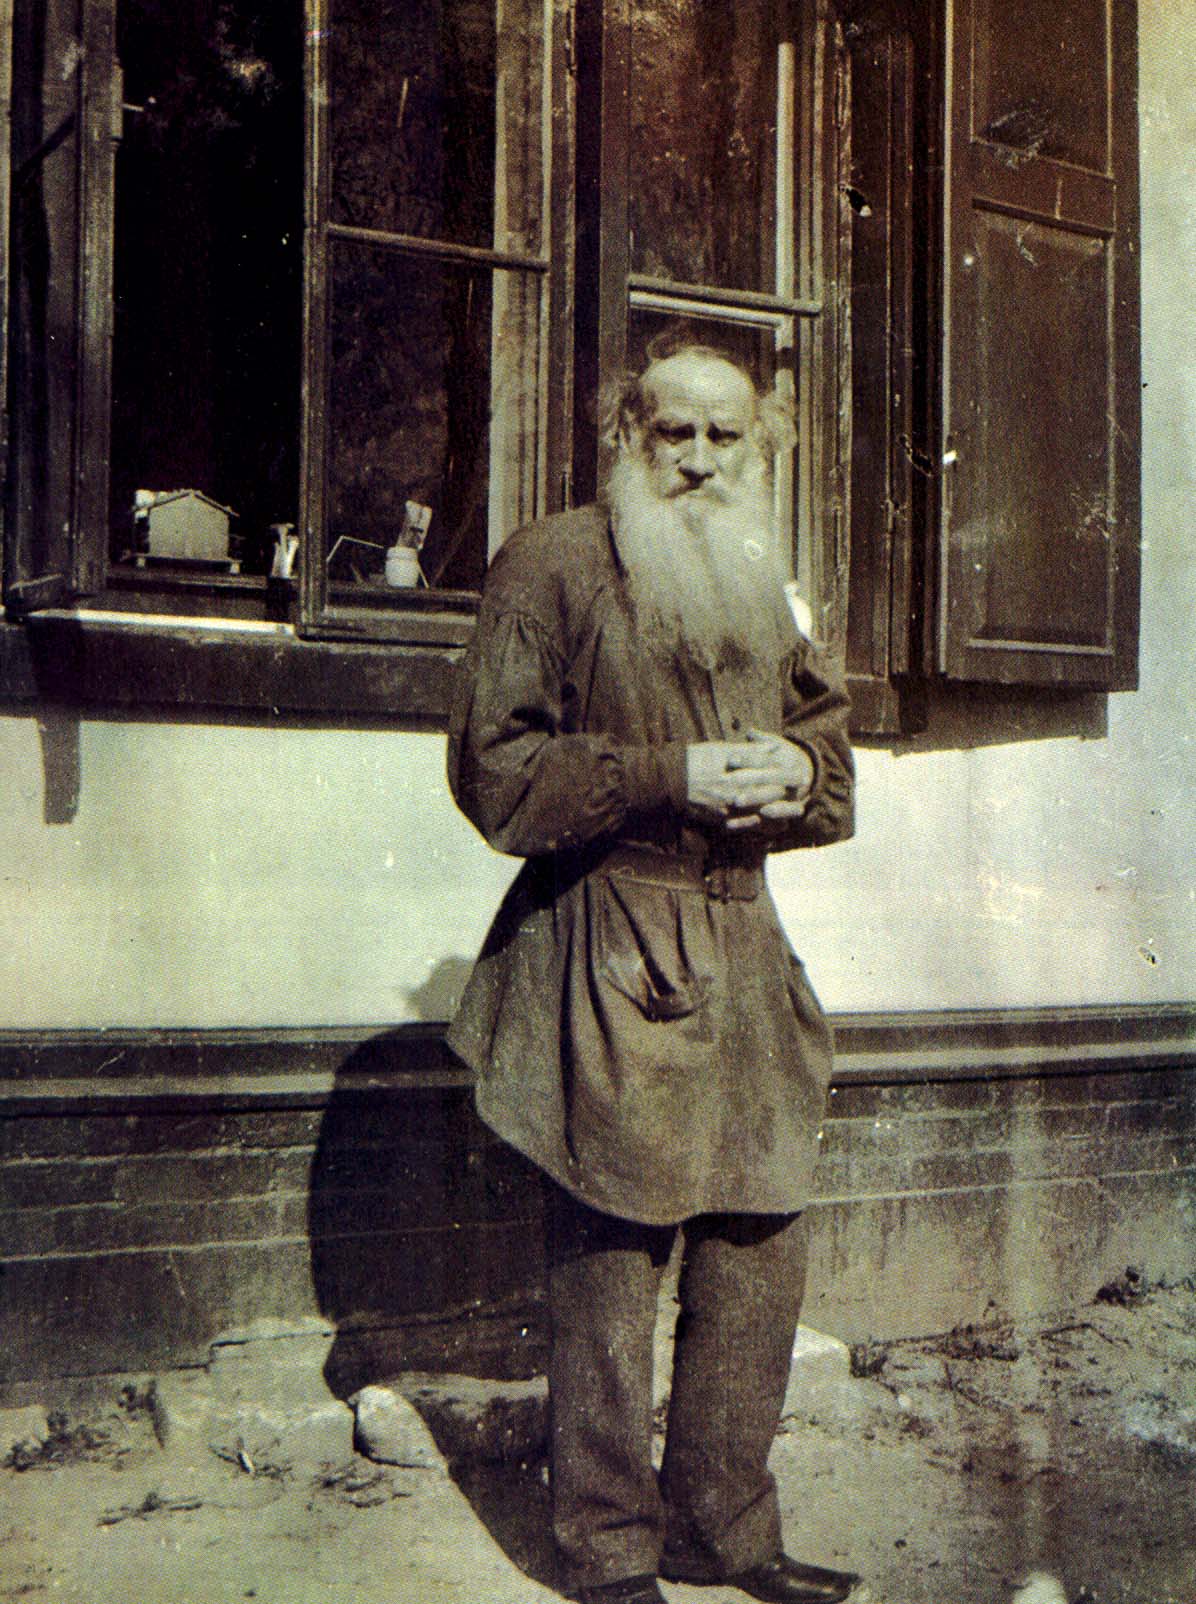 Л.Н. Толстой у окна дома в Хамовниках. Фотография И.Л. Толстого. 1899 г.